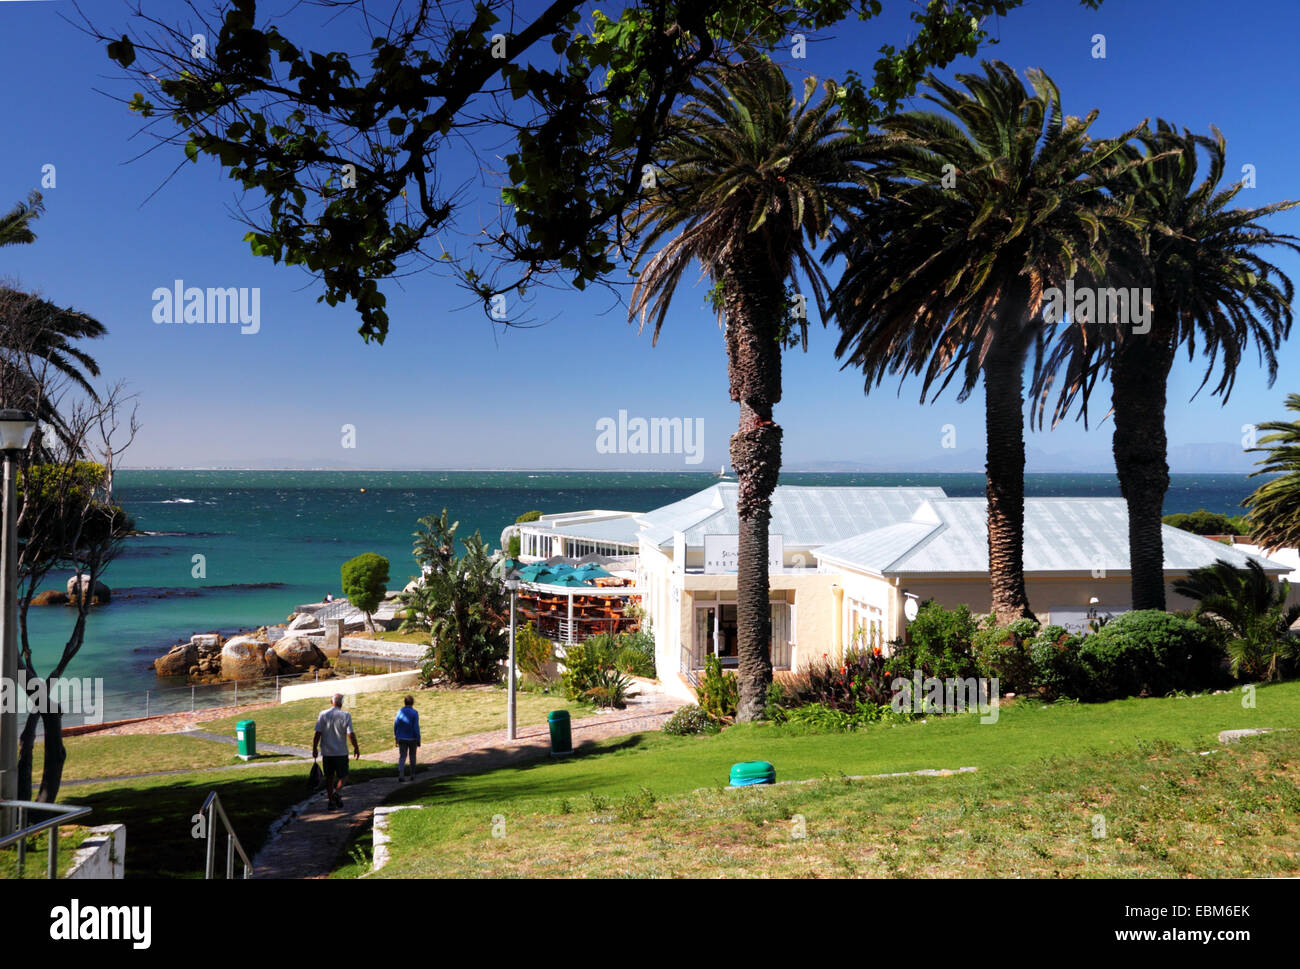 Palmen Sie mit türkisblauem Meer und ein Restaurant am Strand. Stockfoto